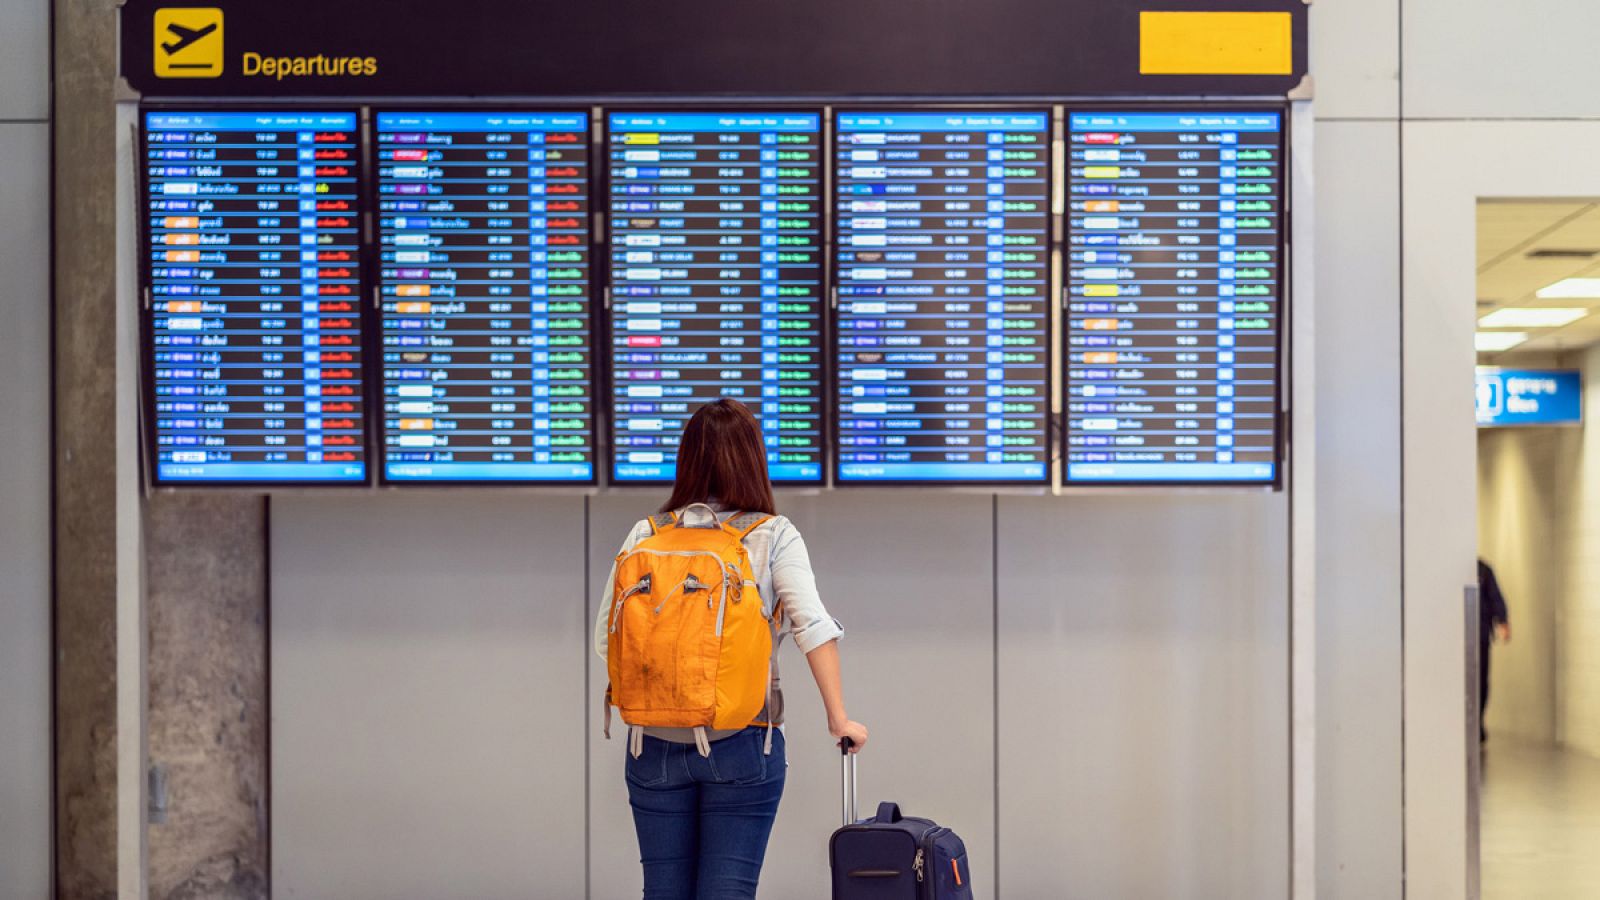 Una mujer observa las pantallas de Salidas en un aeropuerto